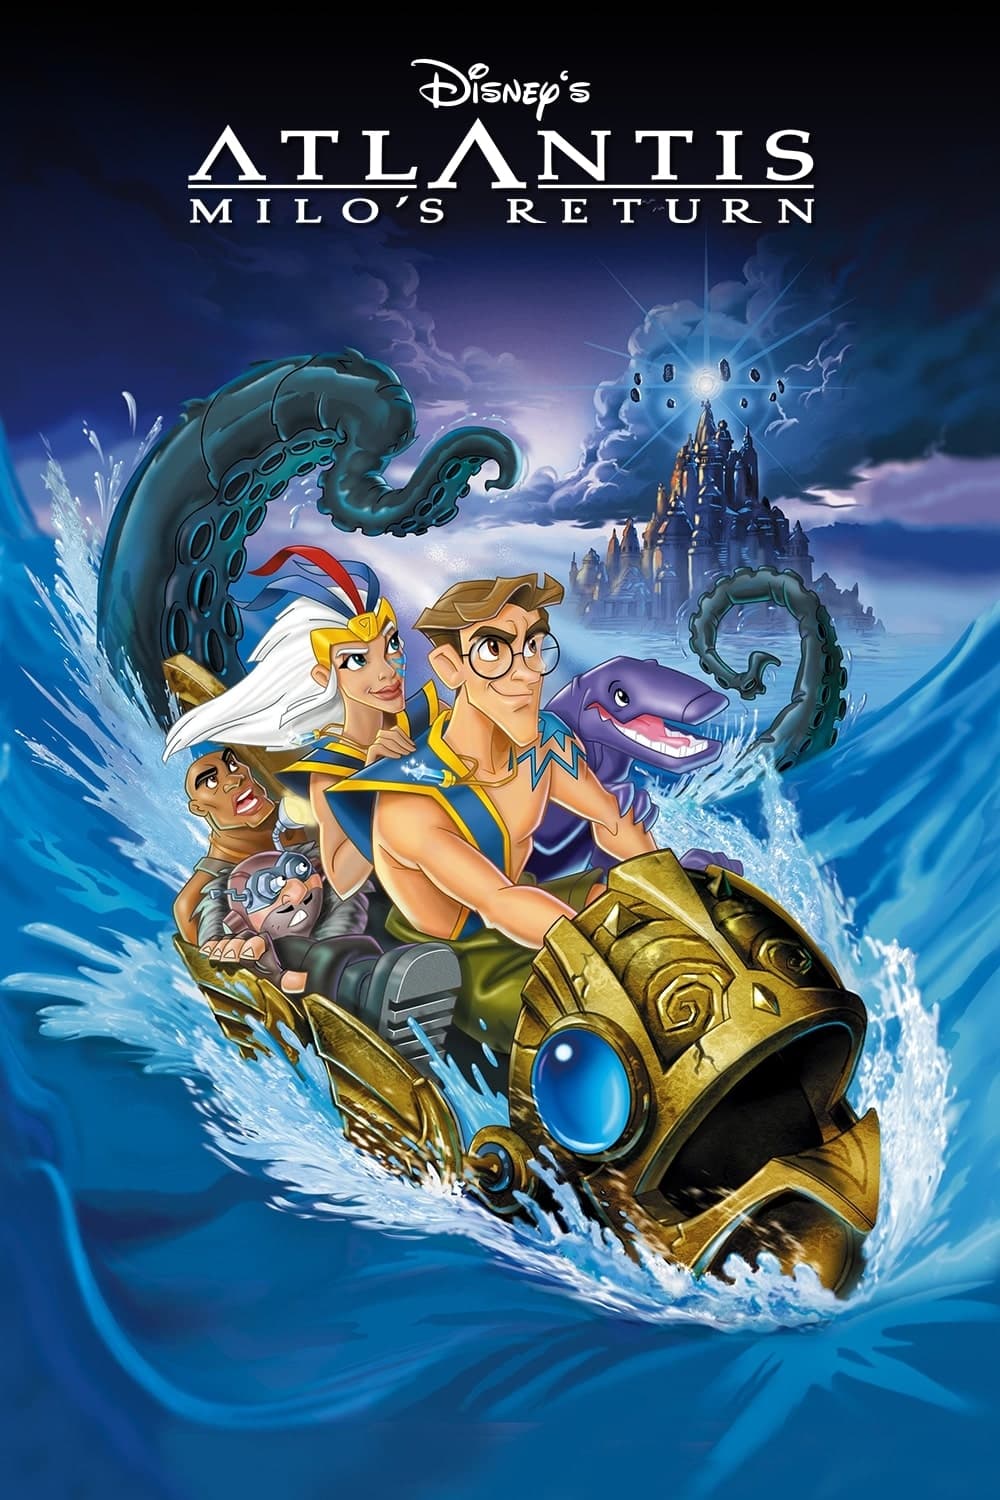 Atlantis: El regreso de Milo (2003)